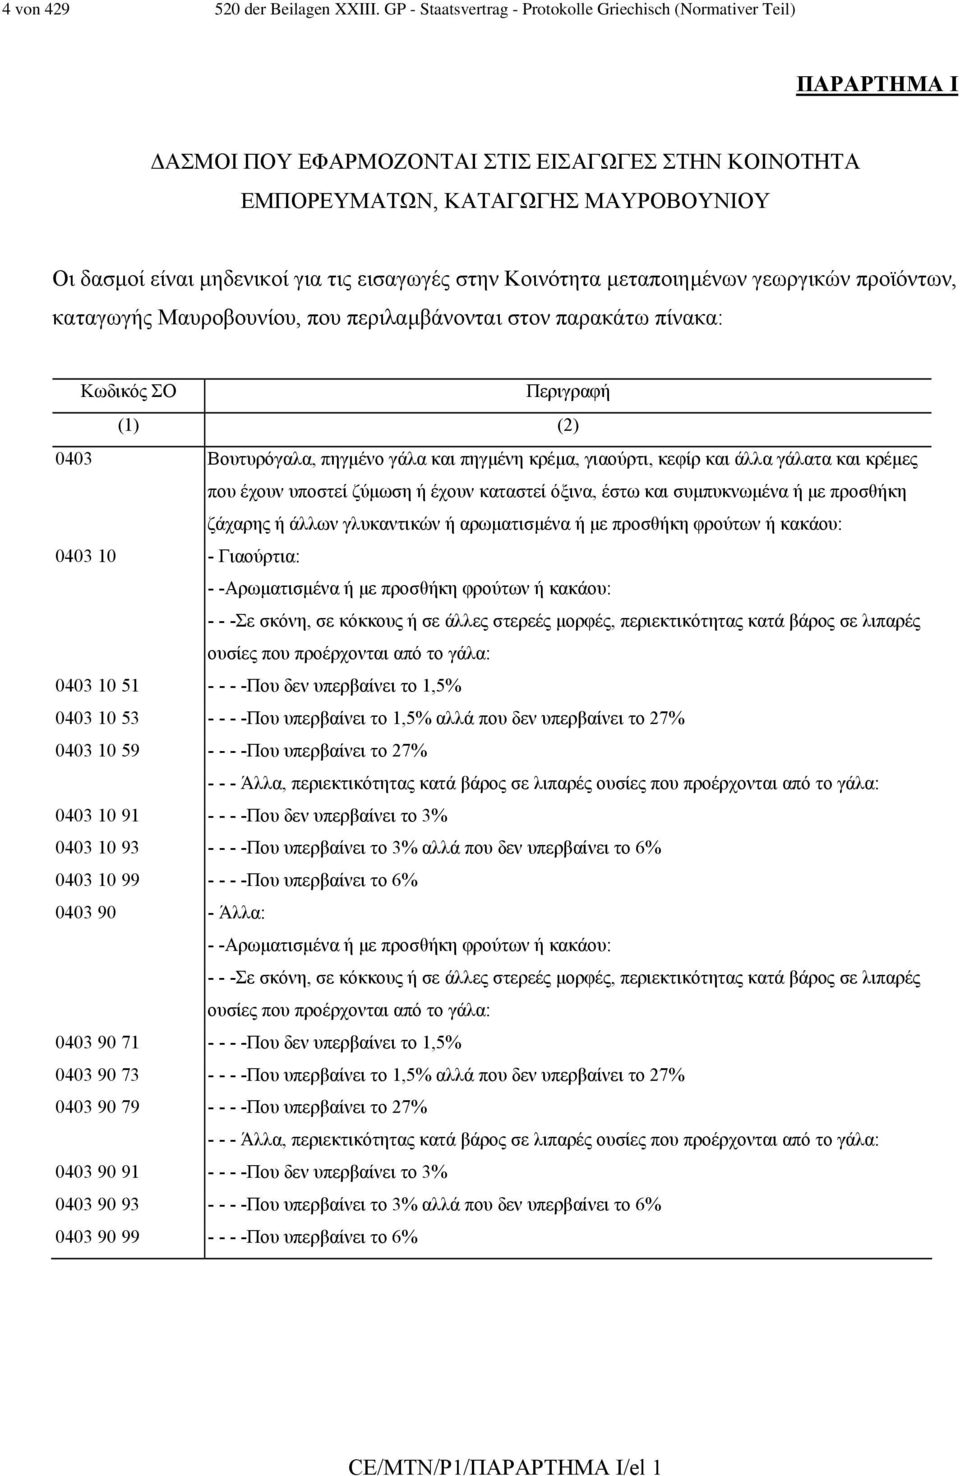 εισαγωγές στην Κοινότητα µεταποιηµένων γεωργικών προϊόντων, καταγωγής Μαυροβουνίου, που περιλαµβάνονται στον παρακάτω πίνακα: Κωδικός ΣΟ Περιγραφή (1) (2) 0403 Βουτυρόγαλα, πηγµένο γάλα και πηγµένη